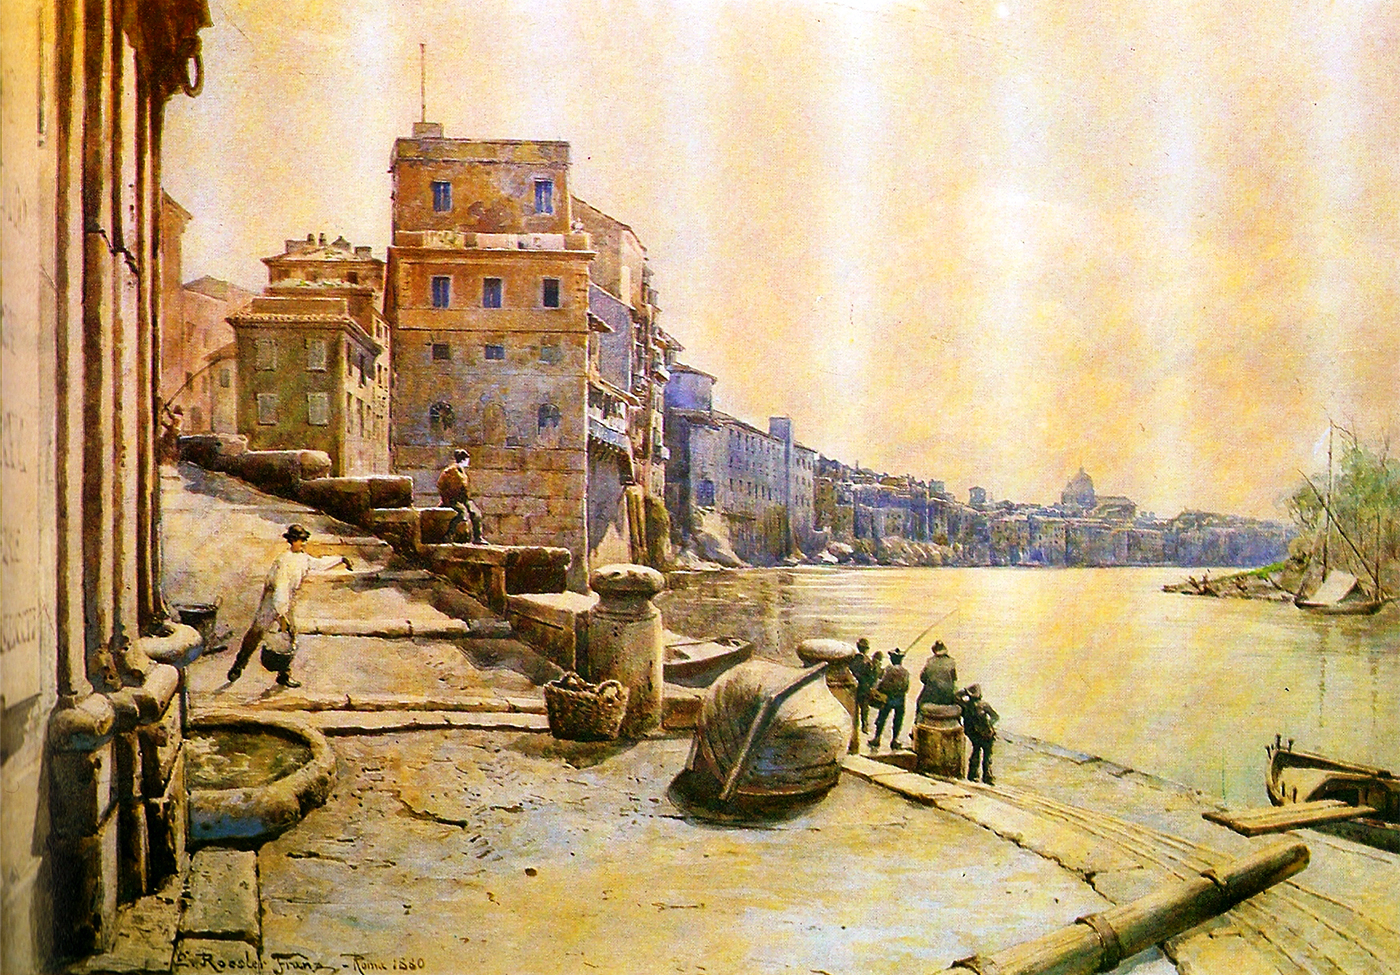 The Porto di Ripetta in a suggestive old illustration